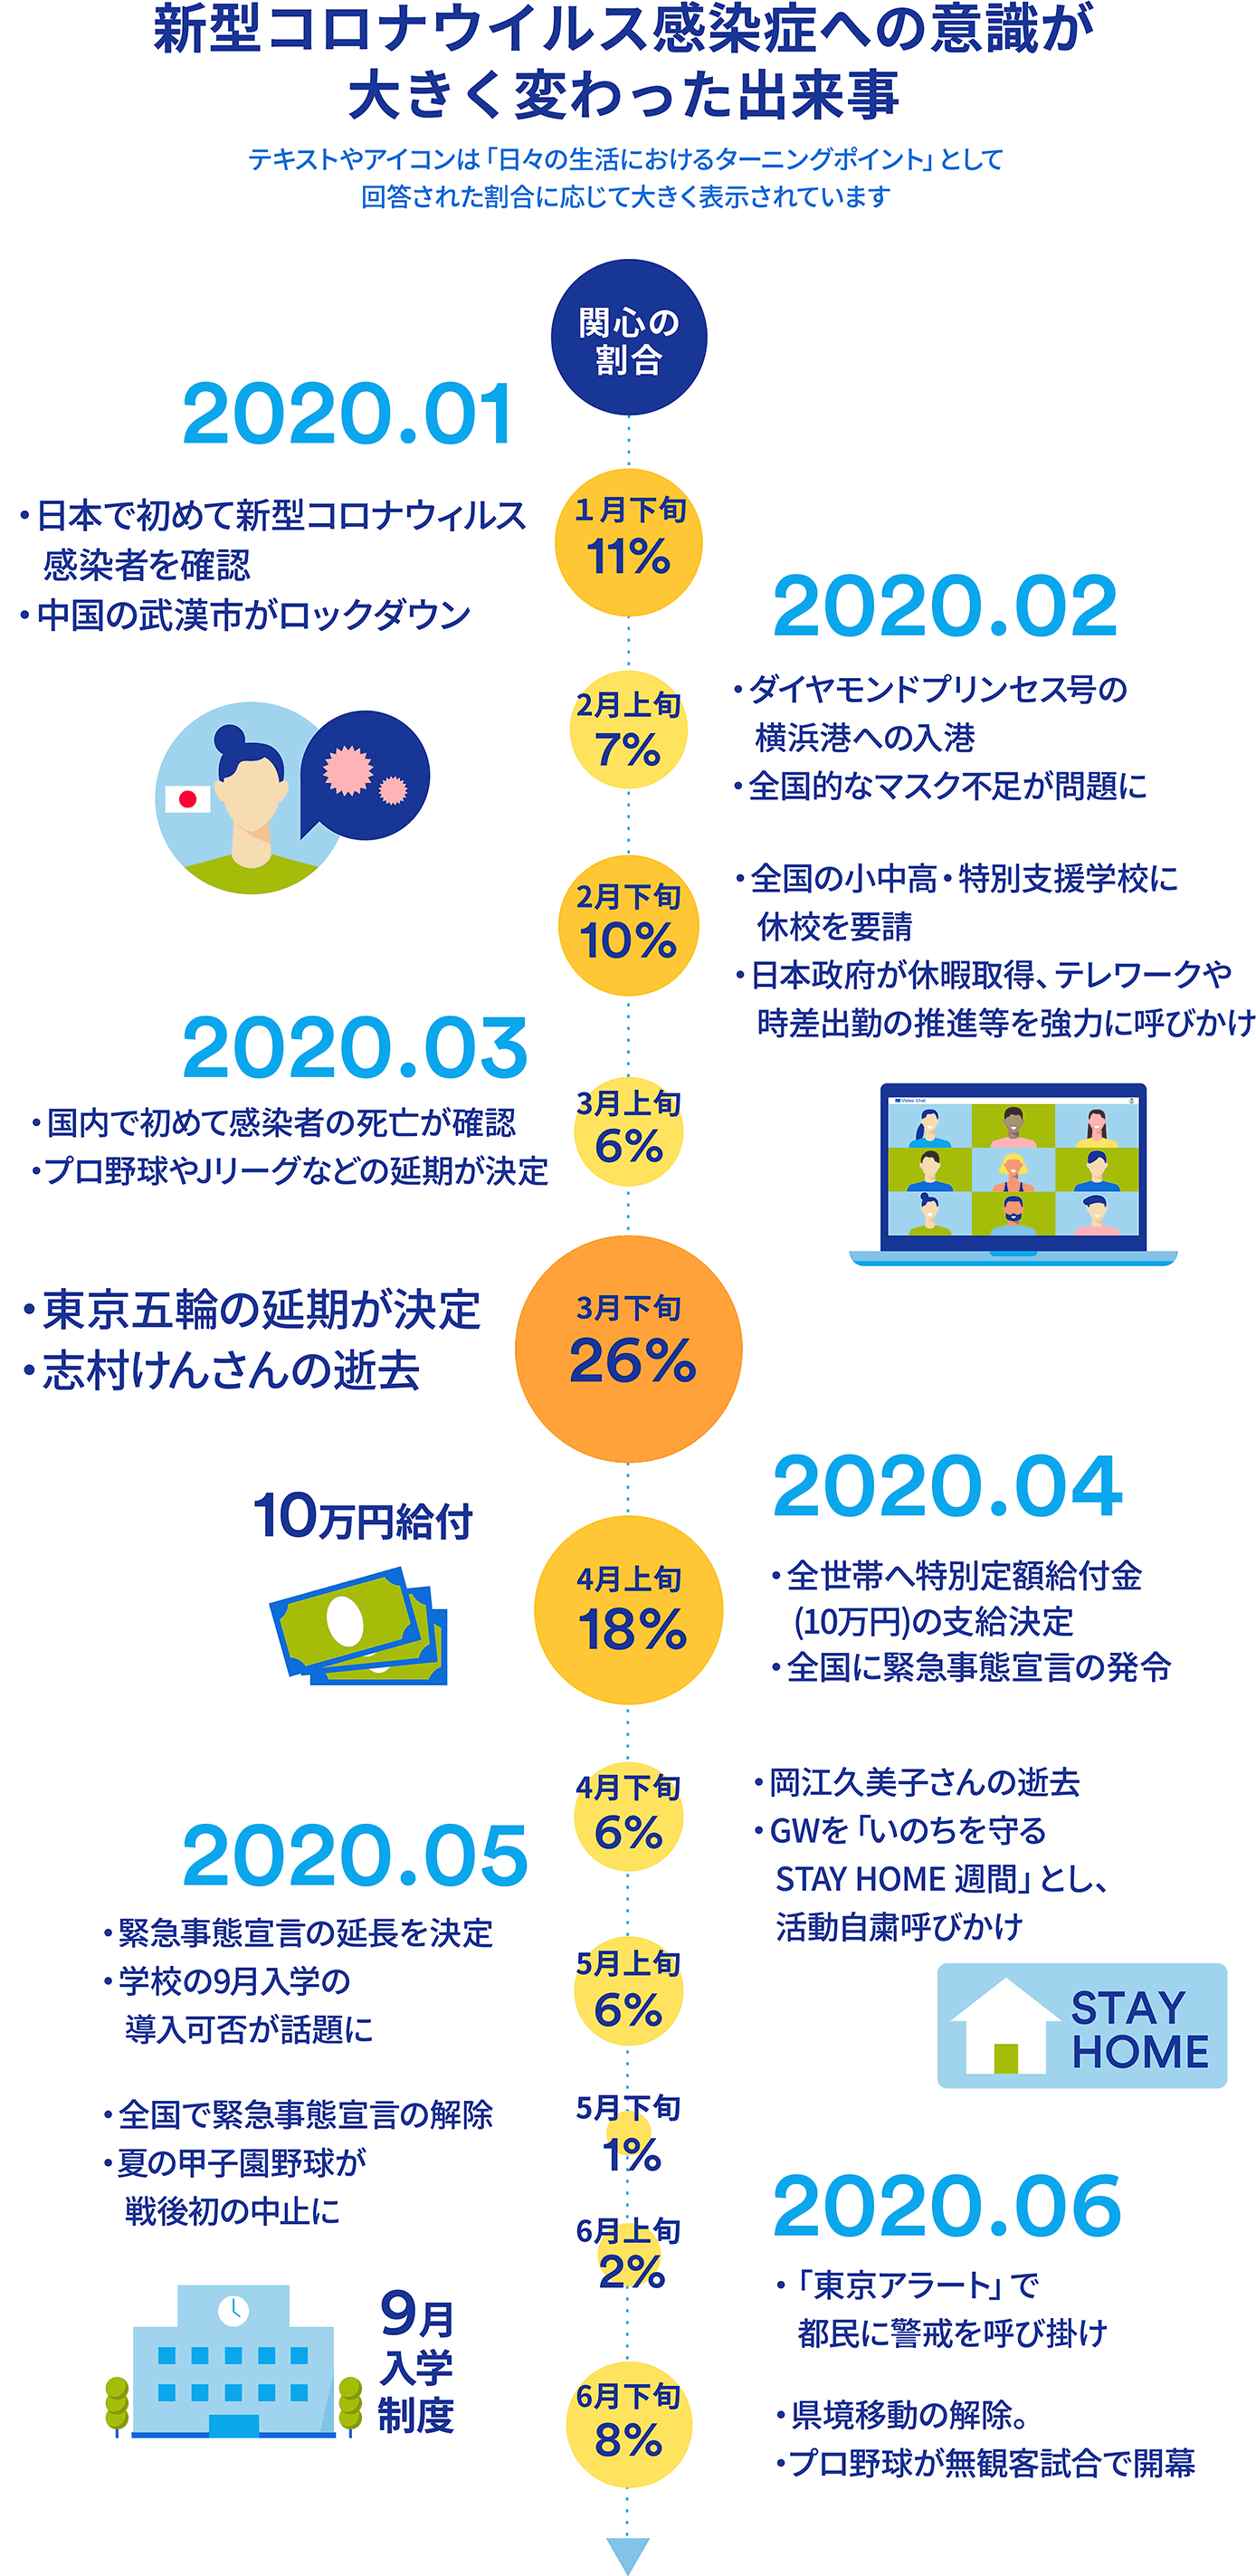 新型コロナウイルス感染症への意識が大きく変わった出来事　テキストやアイコンは「日々の生活におけるターニングポイント」として回答された割合に応じて大きく表示されています　2020年1月　関心の割合　1月下旬11％　日本で初めて新型コロナウイルス感染者を確認　中国の武漢市がロックダウン　2020年2月　関心の割合　2月上旬7％　ダイヤモンドプリンセス号の横浜港への入港　全国的なマスク不足が問題に　関心の割合　2月下旬10％　全国の小中高・特別支援学校に休校を要請　日本政府が休暇取得、テレワークや時差出勤の推進等を強力に呼びかけ　2020年3月　関心の割合　3月上旬6％　国内で初めて感染者の死亡が確認　プロ野球やJリーグなどの延期が決定　関心の割合　3月下旬26％　東京五輪の延期が決定　志村けんさんの逝去　2020年4月　関心の割合　4月上旬18％　全世帯へ特別定額給付金（10万円）の支給決定　全国に緊急事態宣言の発令　関心の割合　4月下旬6％　岡江久美子さんの逝去　GWを「いのちを守るSTAY HOME週間」とし、活動自粛呼びかけ　2020年5月　関心の割合　5月上旬6％　緊急事態宣言の延長を決定　学校の9月入学の導入可否が話題に　関心の割合　5月下旬1％　全国で緊急事態宣言の解除　夏の甲子園野球が戦後初の中止に　2020年6月　関心の割合　6月上旬2％　「東京アラート」で都民に警戒を呼び掛け　関心の割合　6月下旬8％　県境移動の解除　プロ野球が無観客試合で開幕